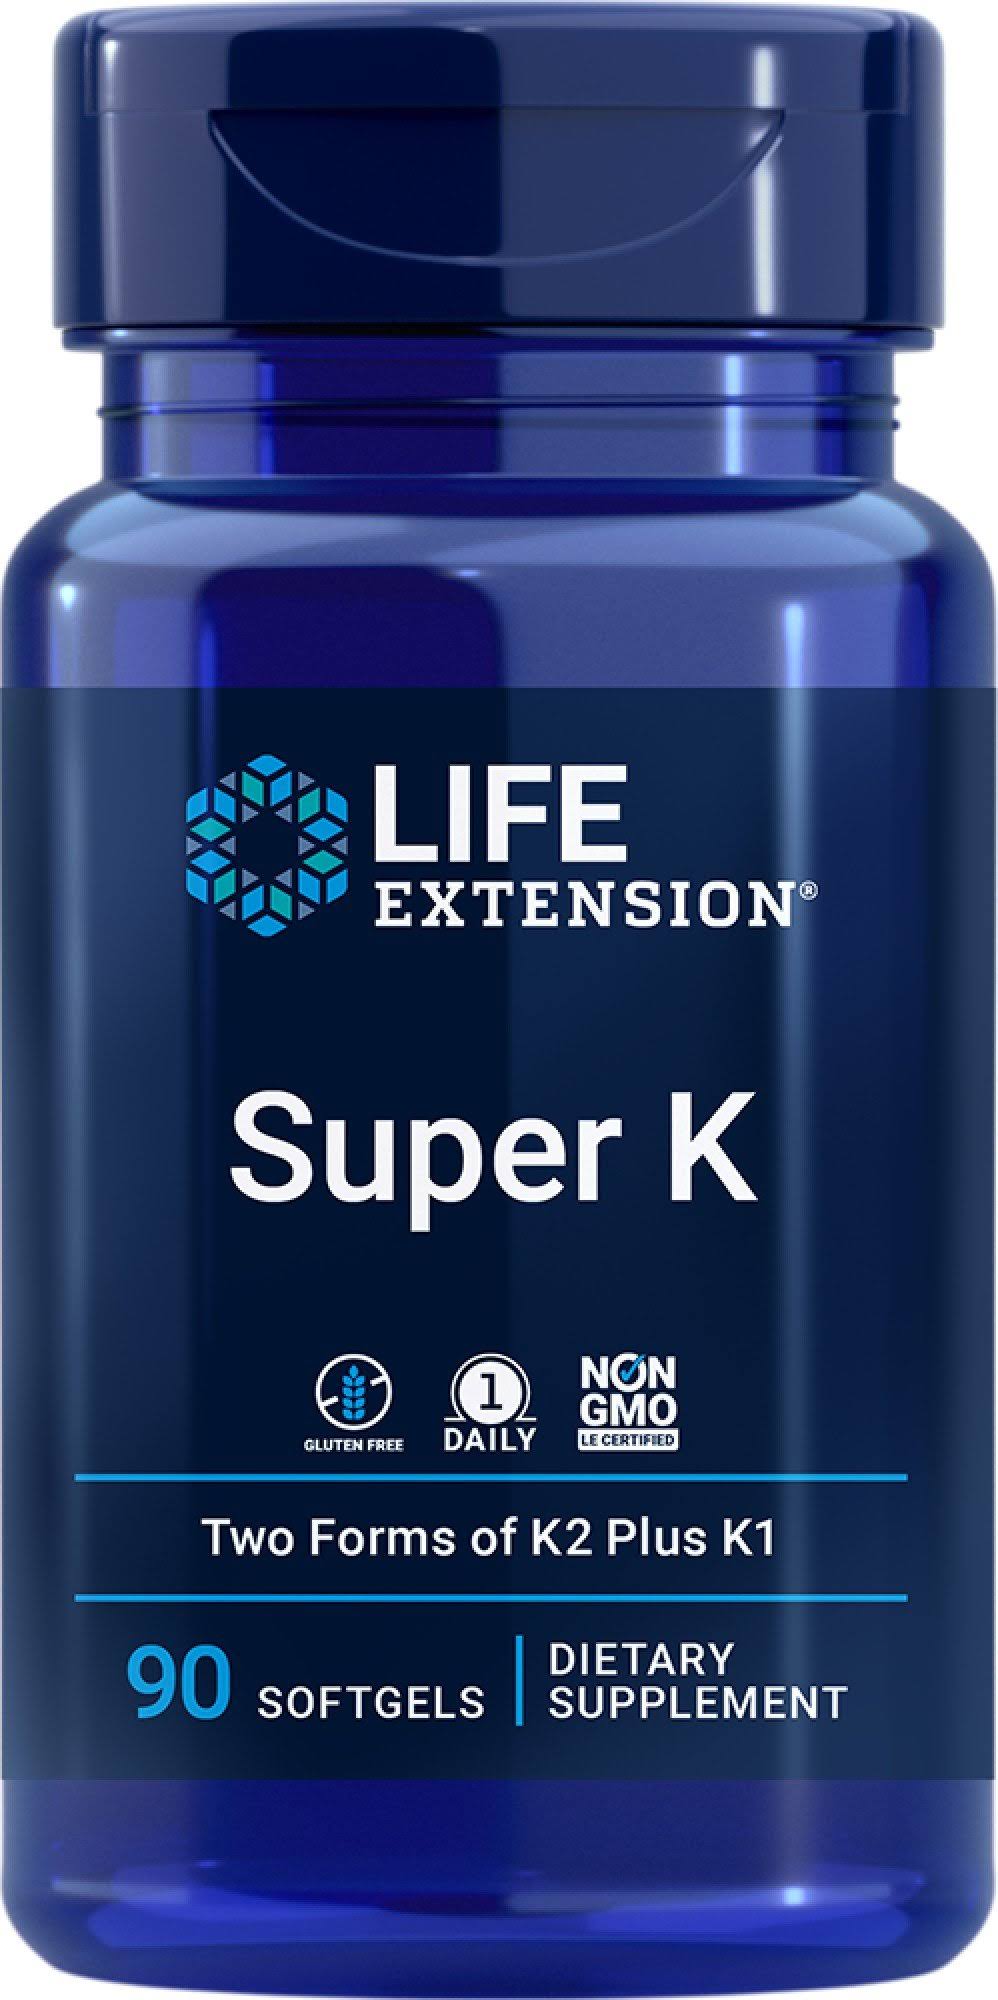 LIFE EXTENSION SUPER K - 90 SOFTGELS